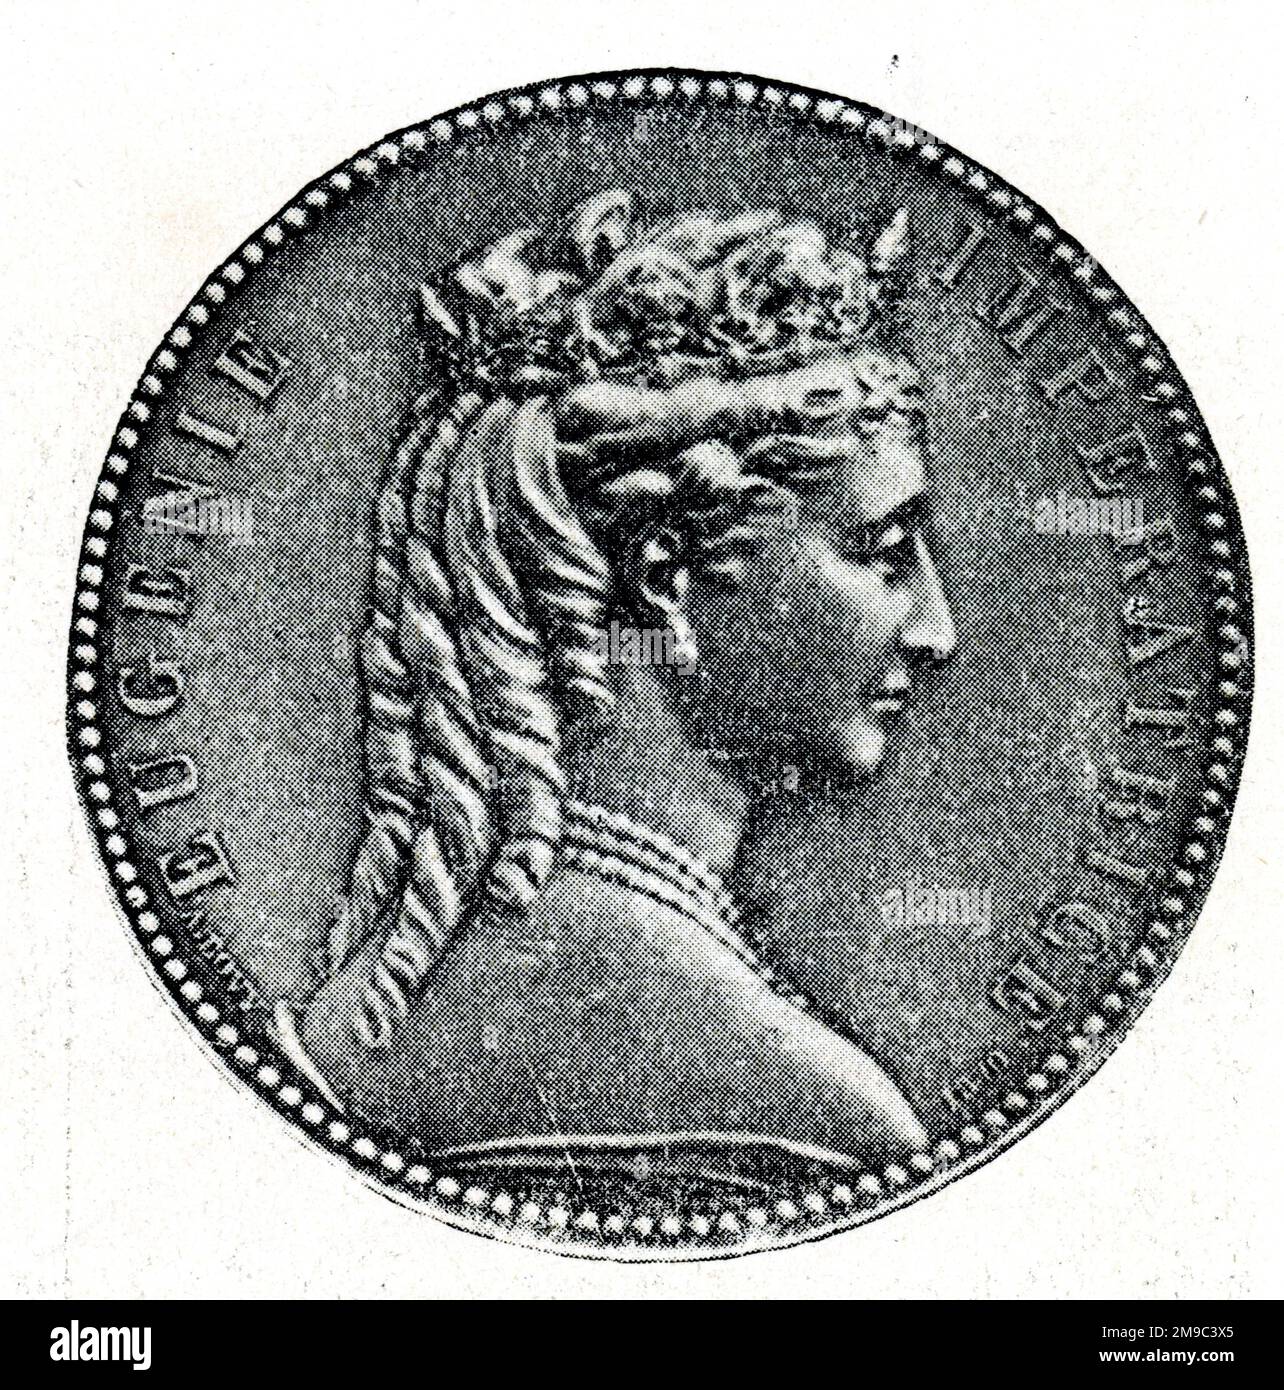 Medalla de plata diseñada por Bovy, que conmemora la visita de la emperatriz Eugenia a Egipto. El reverso de la medalla está decorado con un borde de hojas y flores. Foto de stock